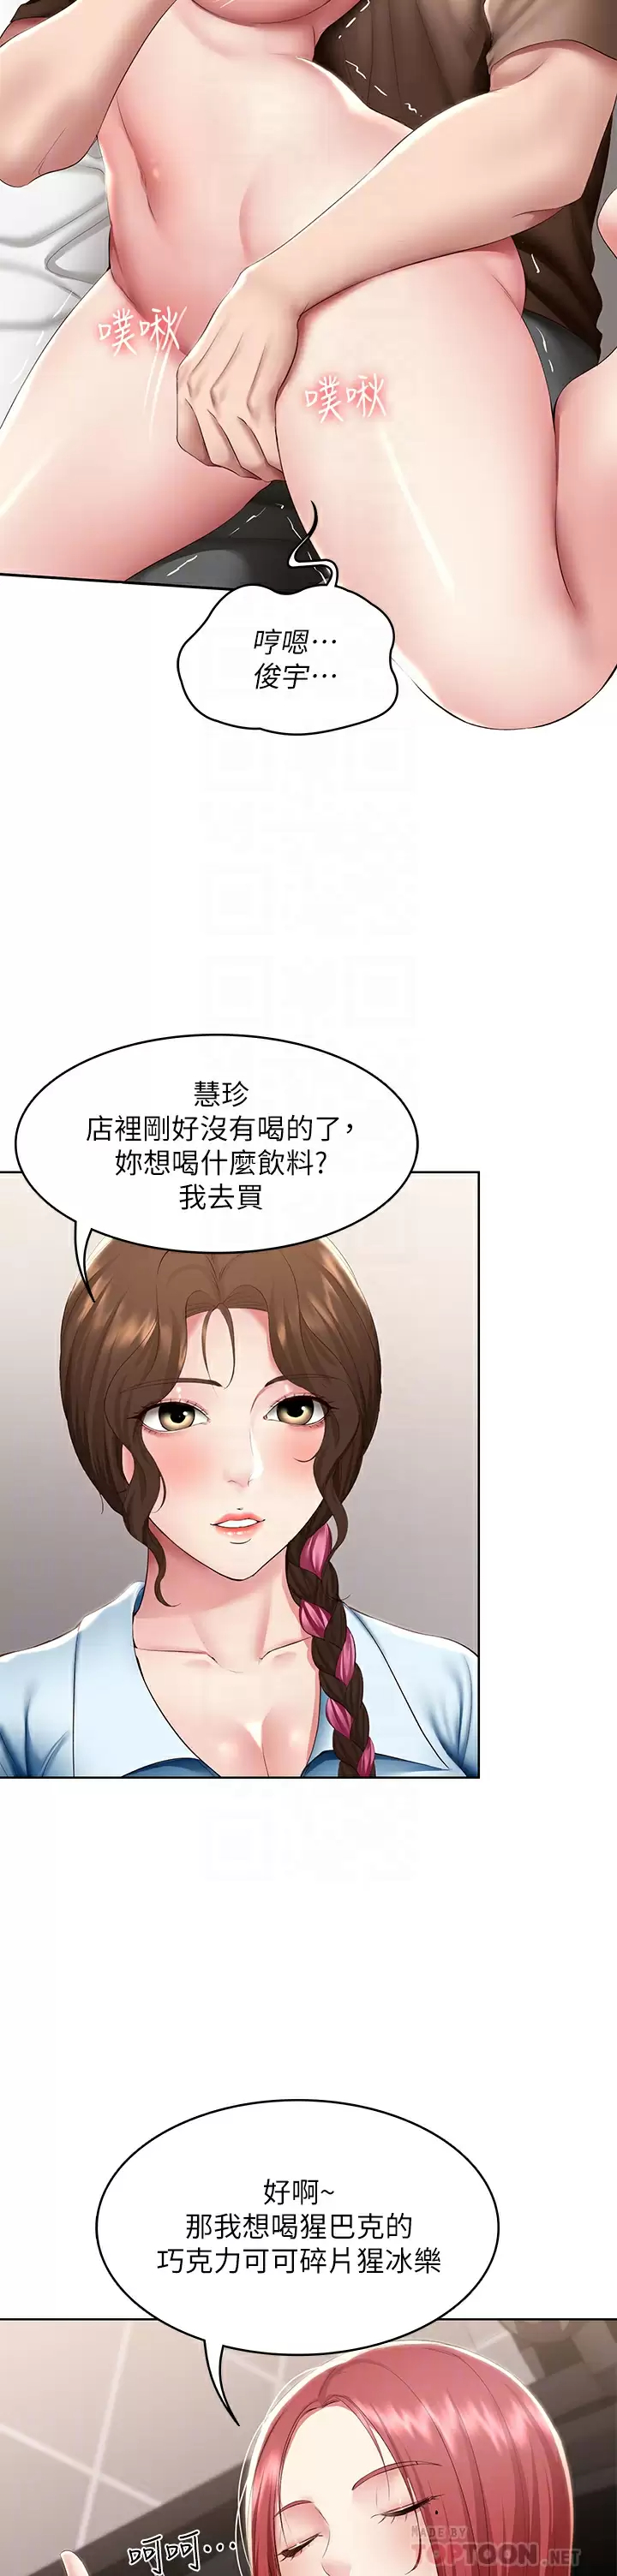 韩国污漫画 寄宿日記 第114话趁阿姨不在偷吃鲍鱼 8